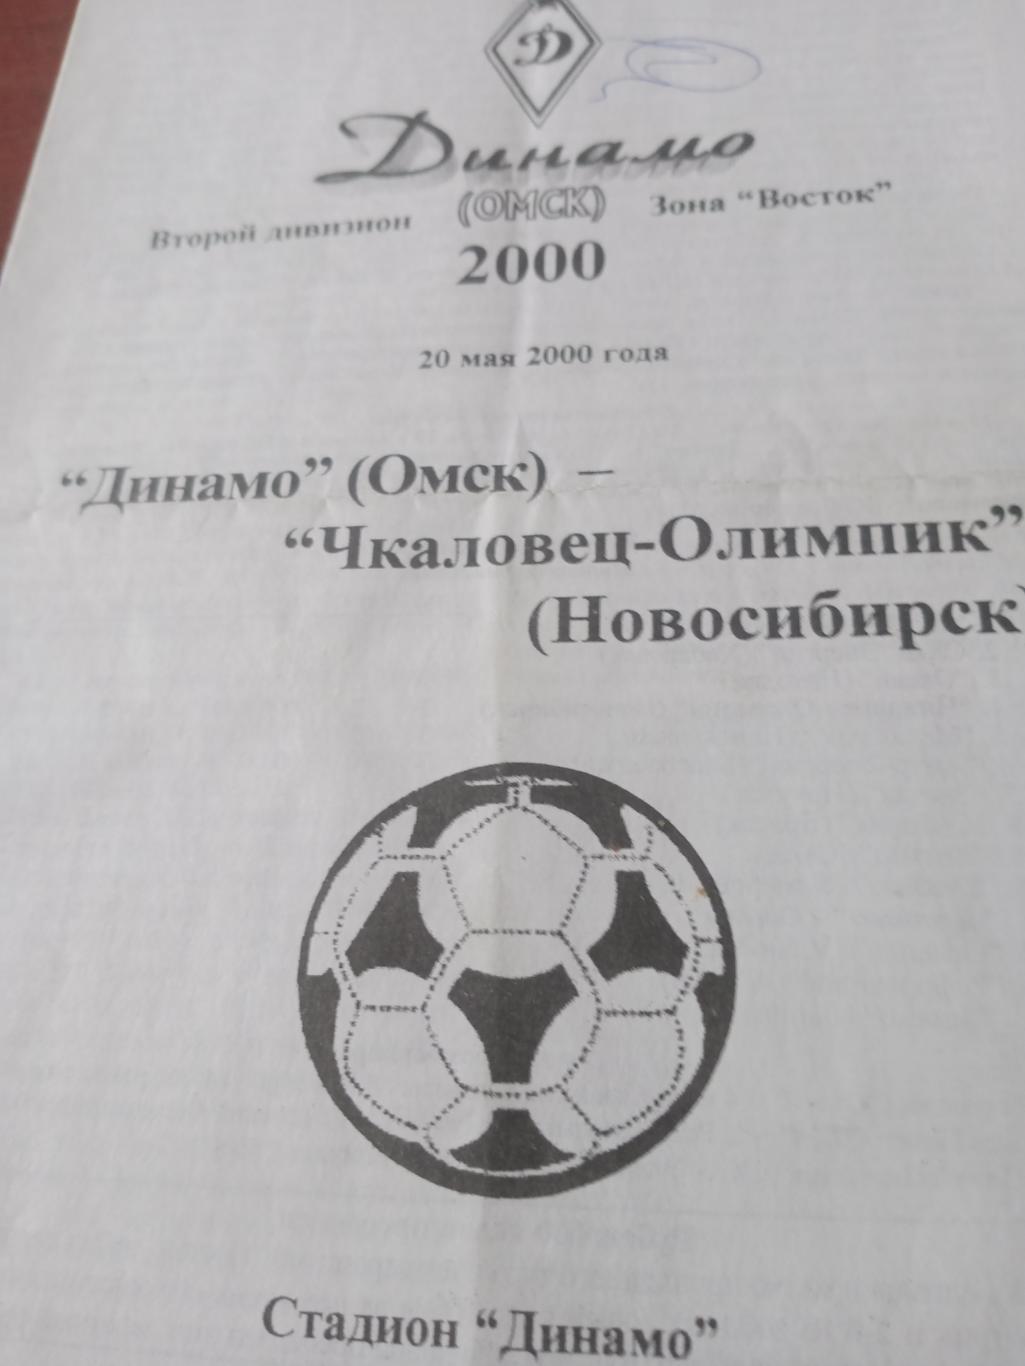 Динамо Омск - Чкаловец-Олимпик Новосибирск. 20 мая 2000 год